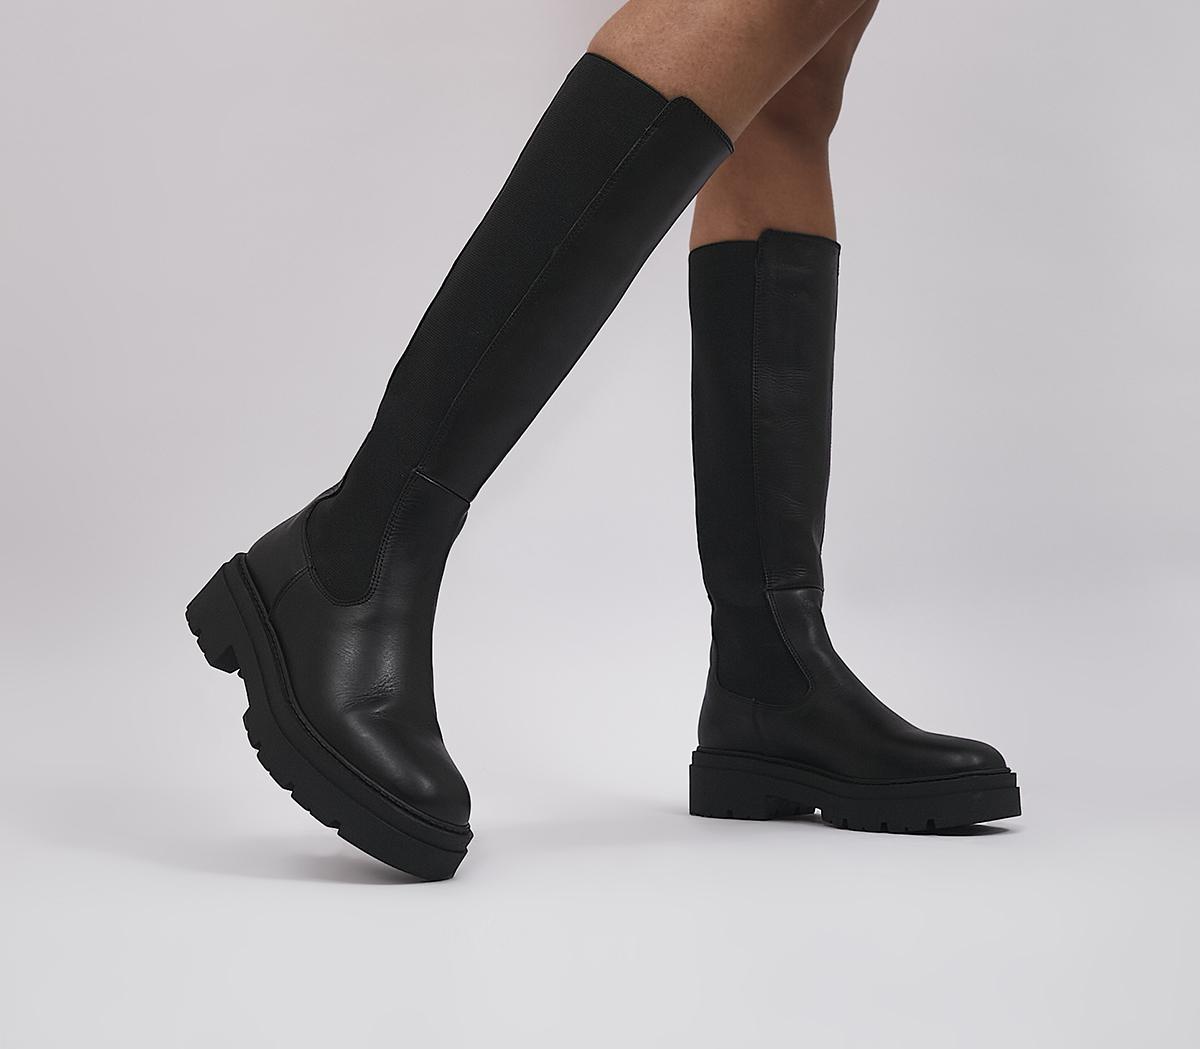 OFFICEKamilla Chelsea Knee BootsBlack Leather